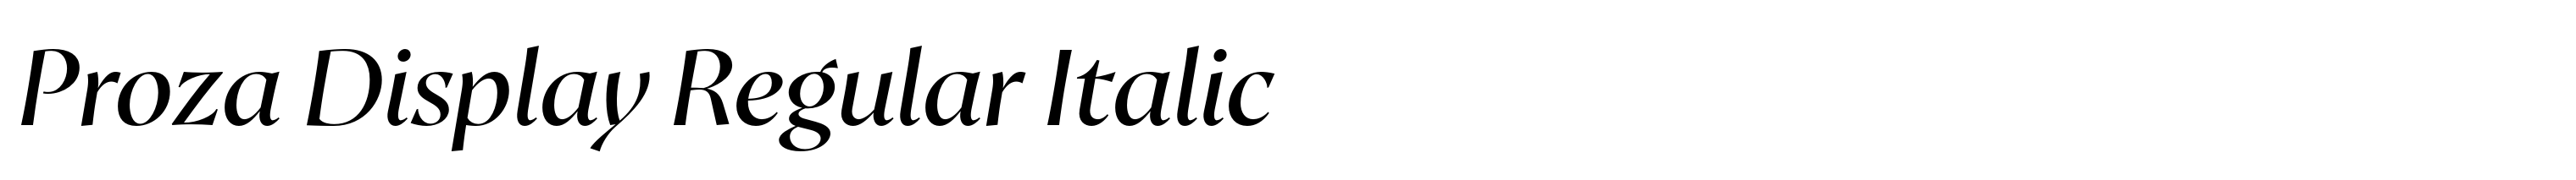 Proza Display Regular Italic